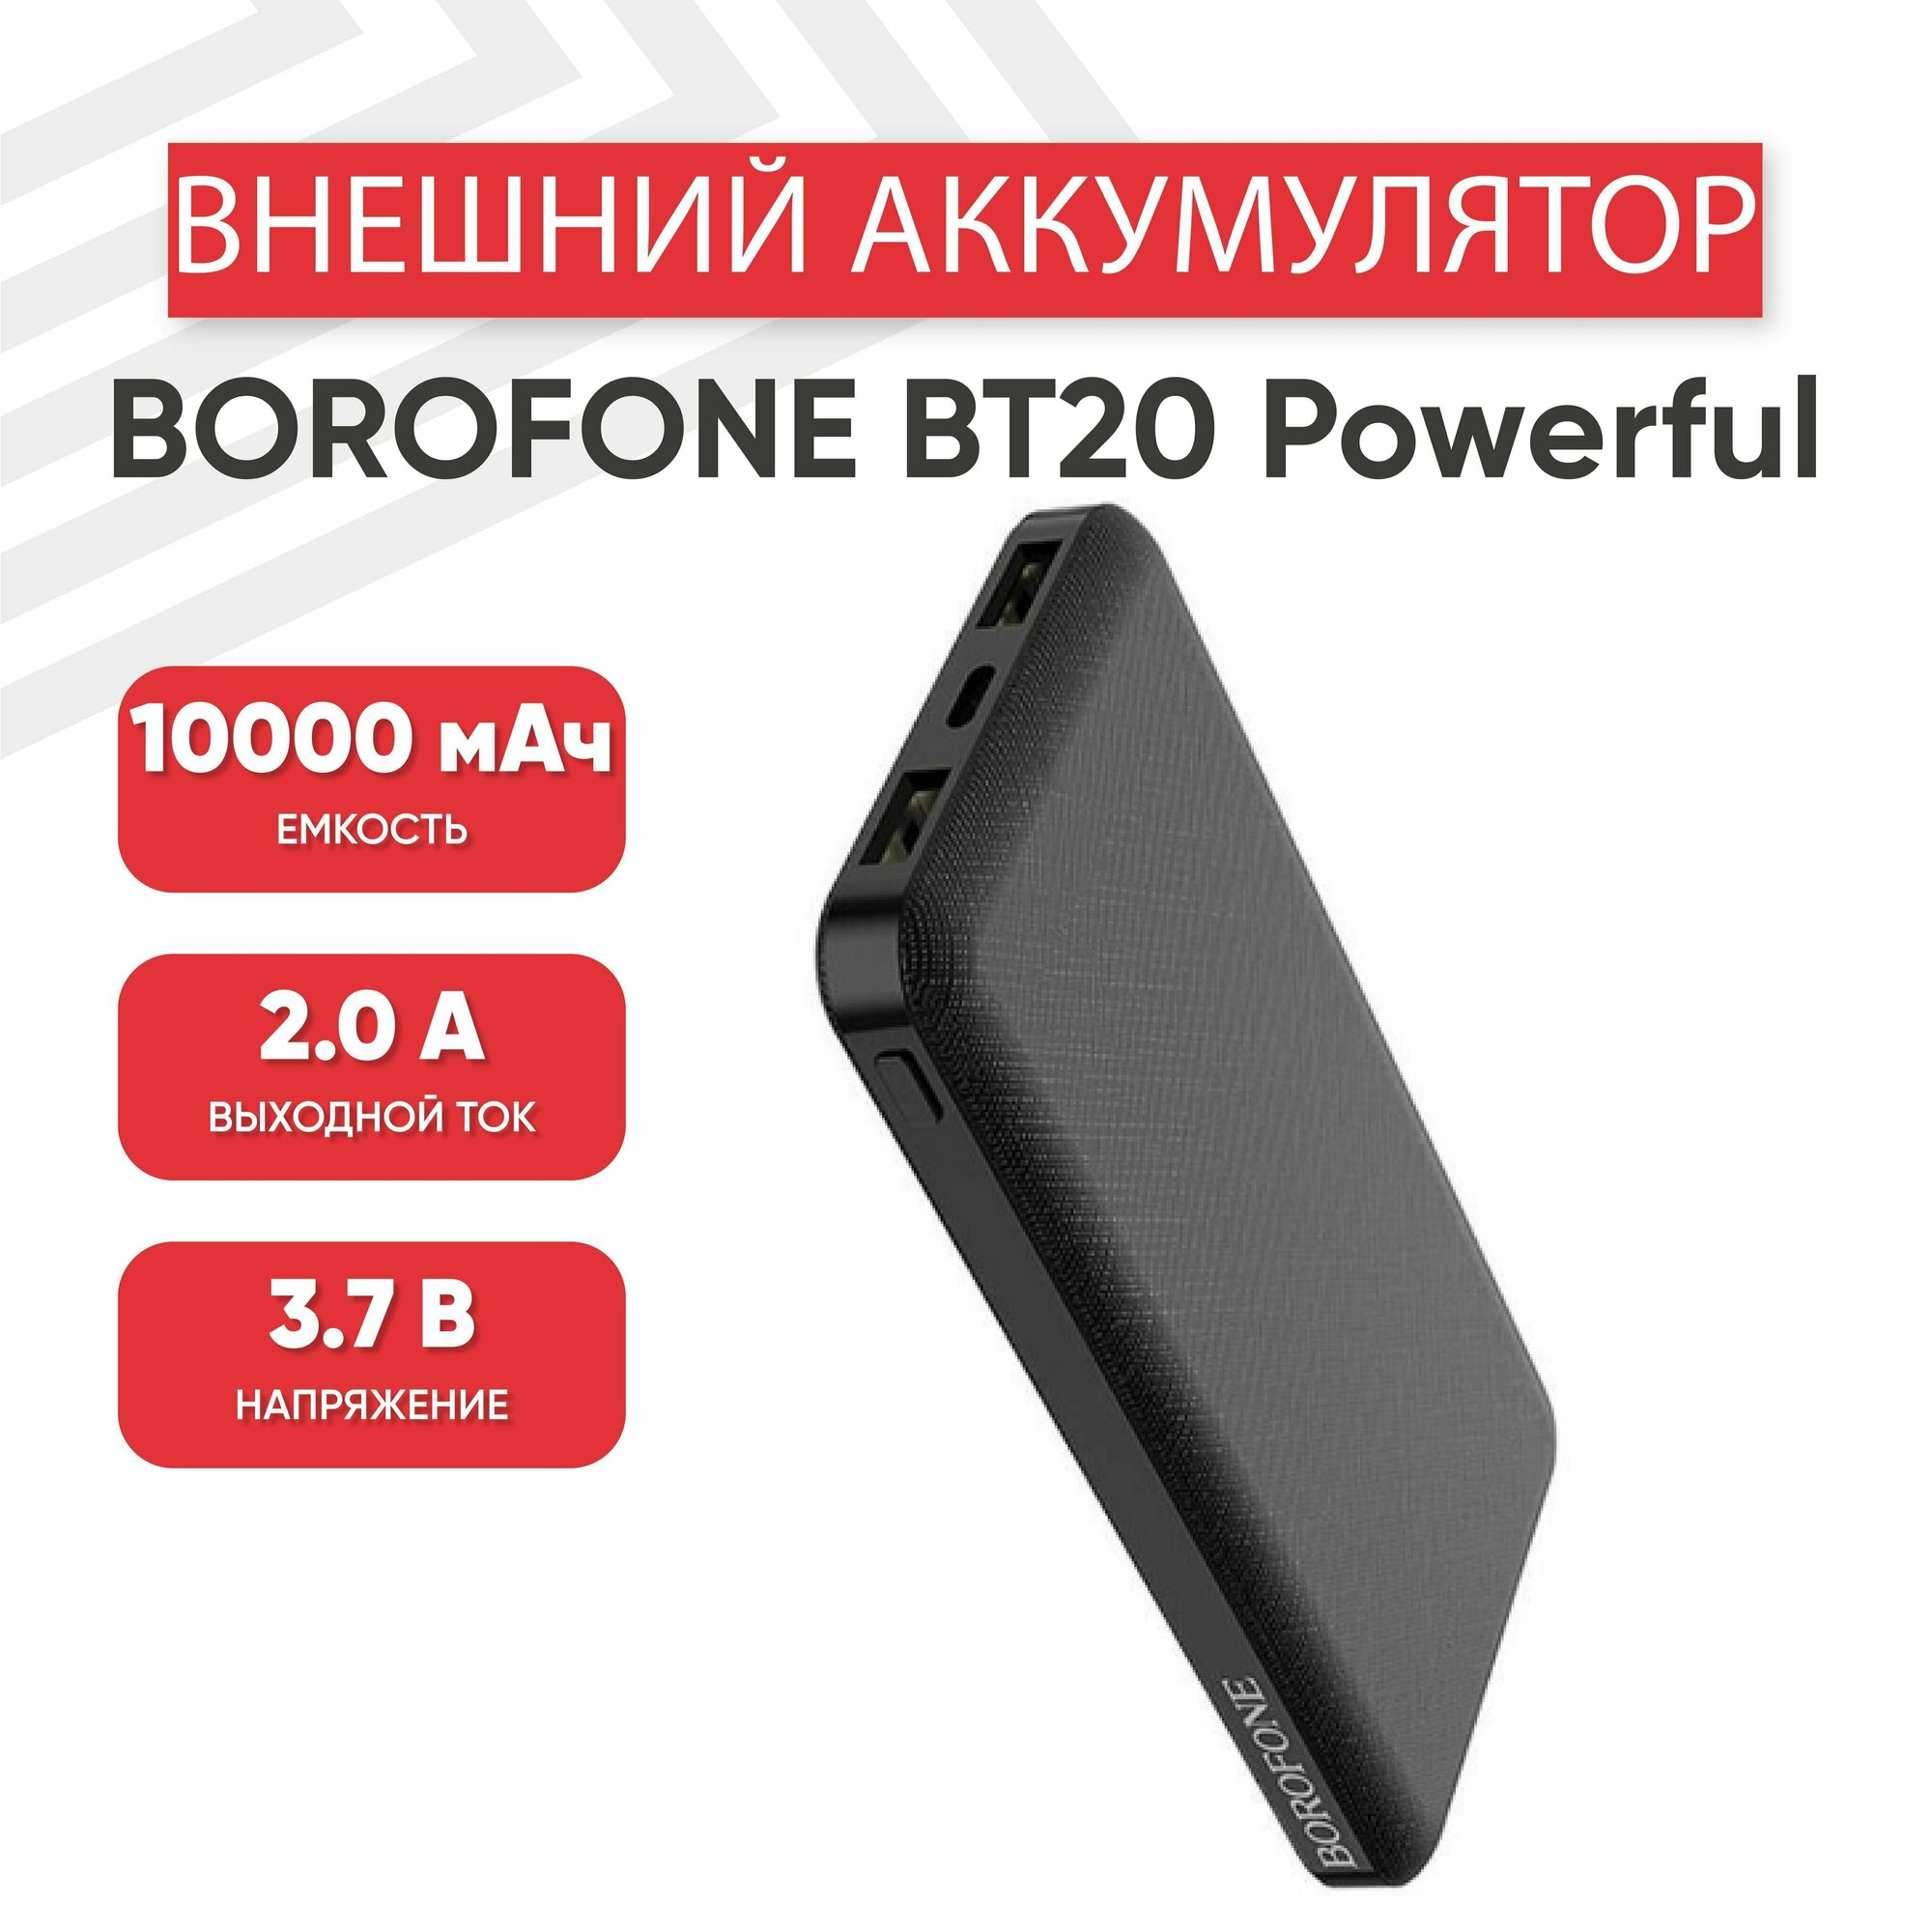 Внешний аккумулятор (Powerbank, АКБ) Borofone BT20 Powerful, 10000мАч, 2хUSB, 2А, Li-Pol, черный